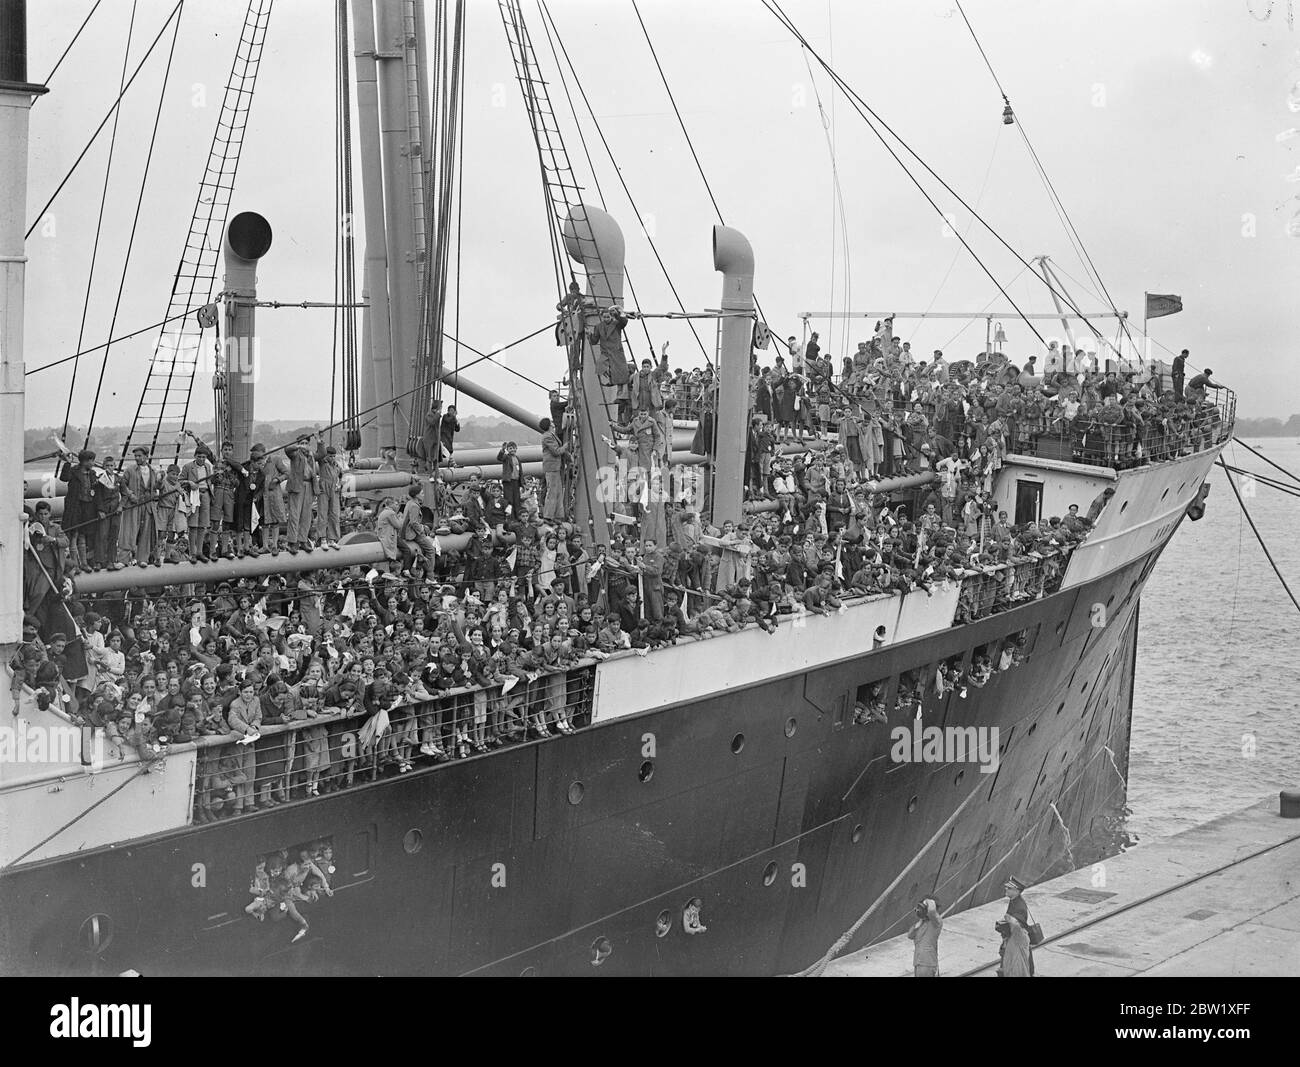 4000 Flüchtlingskinder aus Spanien kamen in Southampton an. 4000 Flüchtlingskinder, viele von ihnen Waisen und in erbärmlichem Zustand, kamen aus dem Baskenland von Spanien, dem Schauplatz der heftigsten Kämpfe, an Bord des Linienschiffes Habana in Southampton an, das von den Schrecken des Bürgerkriegs und der immer gegenwärtigen Gefahr durch Luftangriffe gebracht wurde. Alle leiden unter Unterernährung. Nach der ärztlichen Untersuchung und der Besatzung wurden sie an Bord genommen und in das Speziallager am Stadtrand von Southampton gebracht, wo sie bis zum Ende des Bürgerkriegs bleiben und nach Hause zurückkehren können. Foto zeigt, die Flüchtling Chi Stockfoto